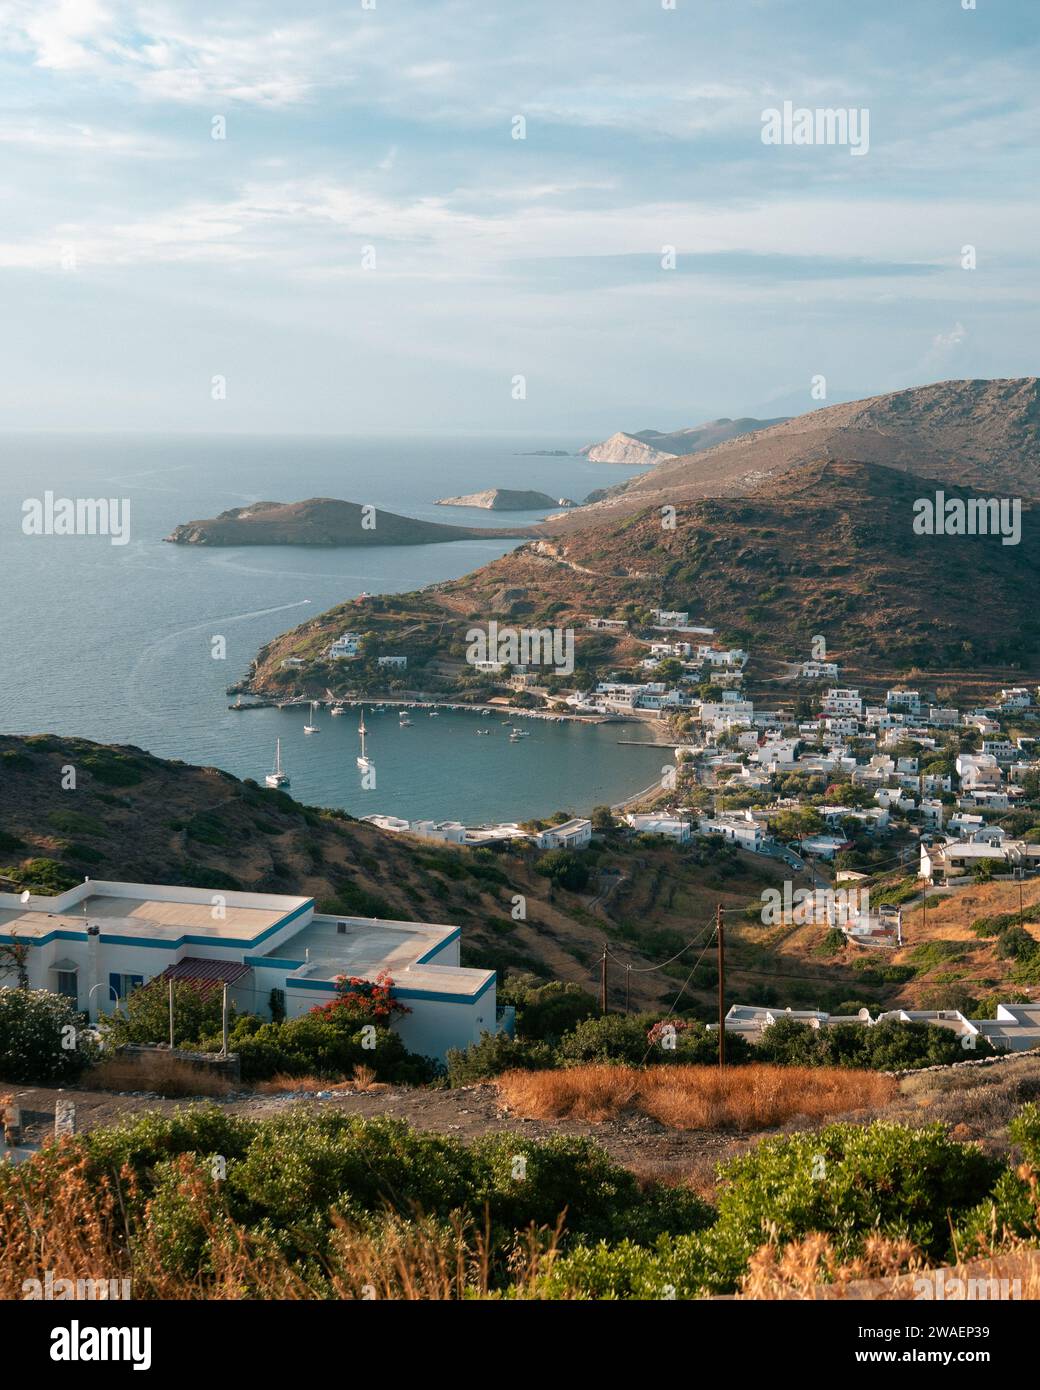 Blick von oben auf das fischerdorf Kini auf der kykladen-Insel Syros in Griechenland mit einer Hafen-, Strand- und Hügellandschaft Stockfoto